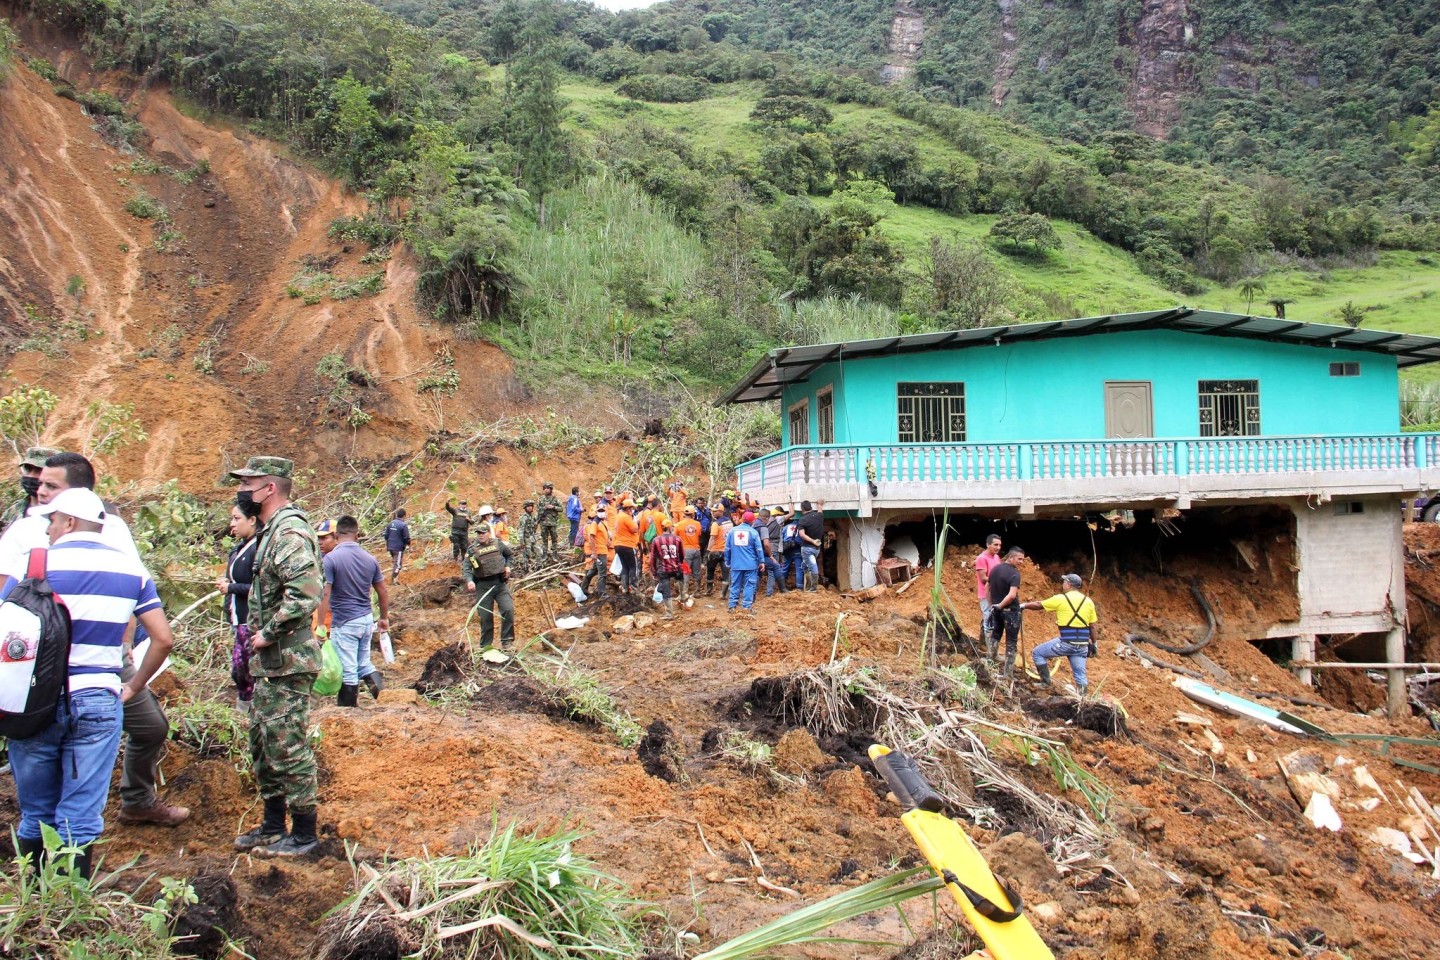 Rettungskräfte sind nach einem Erdrutsch im Südwesten Kolumbiens im Einsatz. Mindestens elf Menschen kamen bei dem Erdrutsch ums Leben, teilte der Katastrophenschutz des Landes mit.